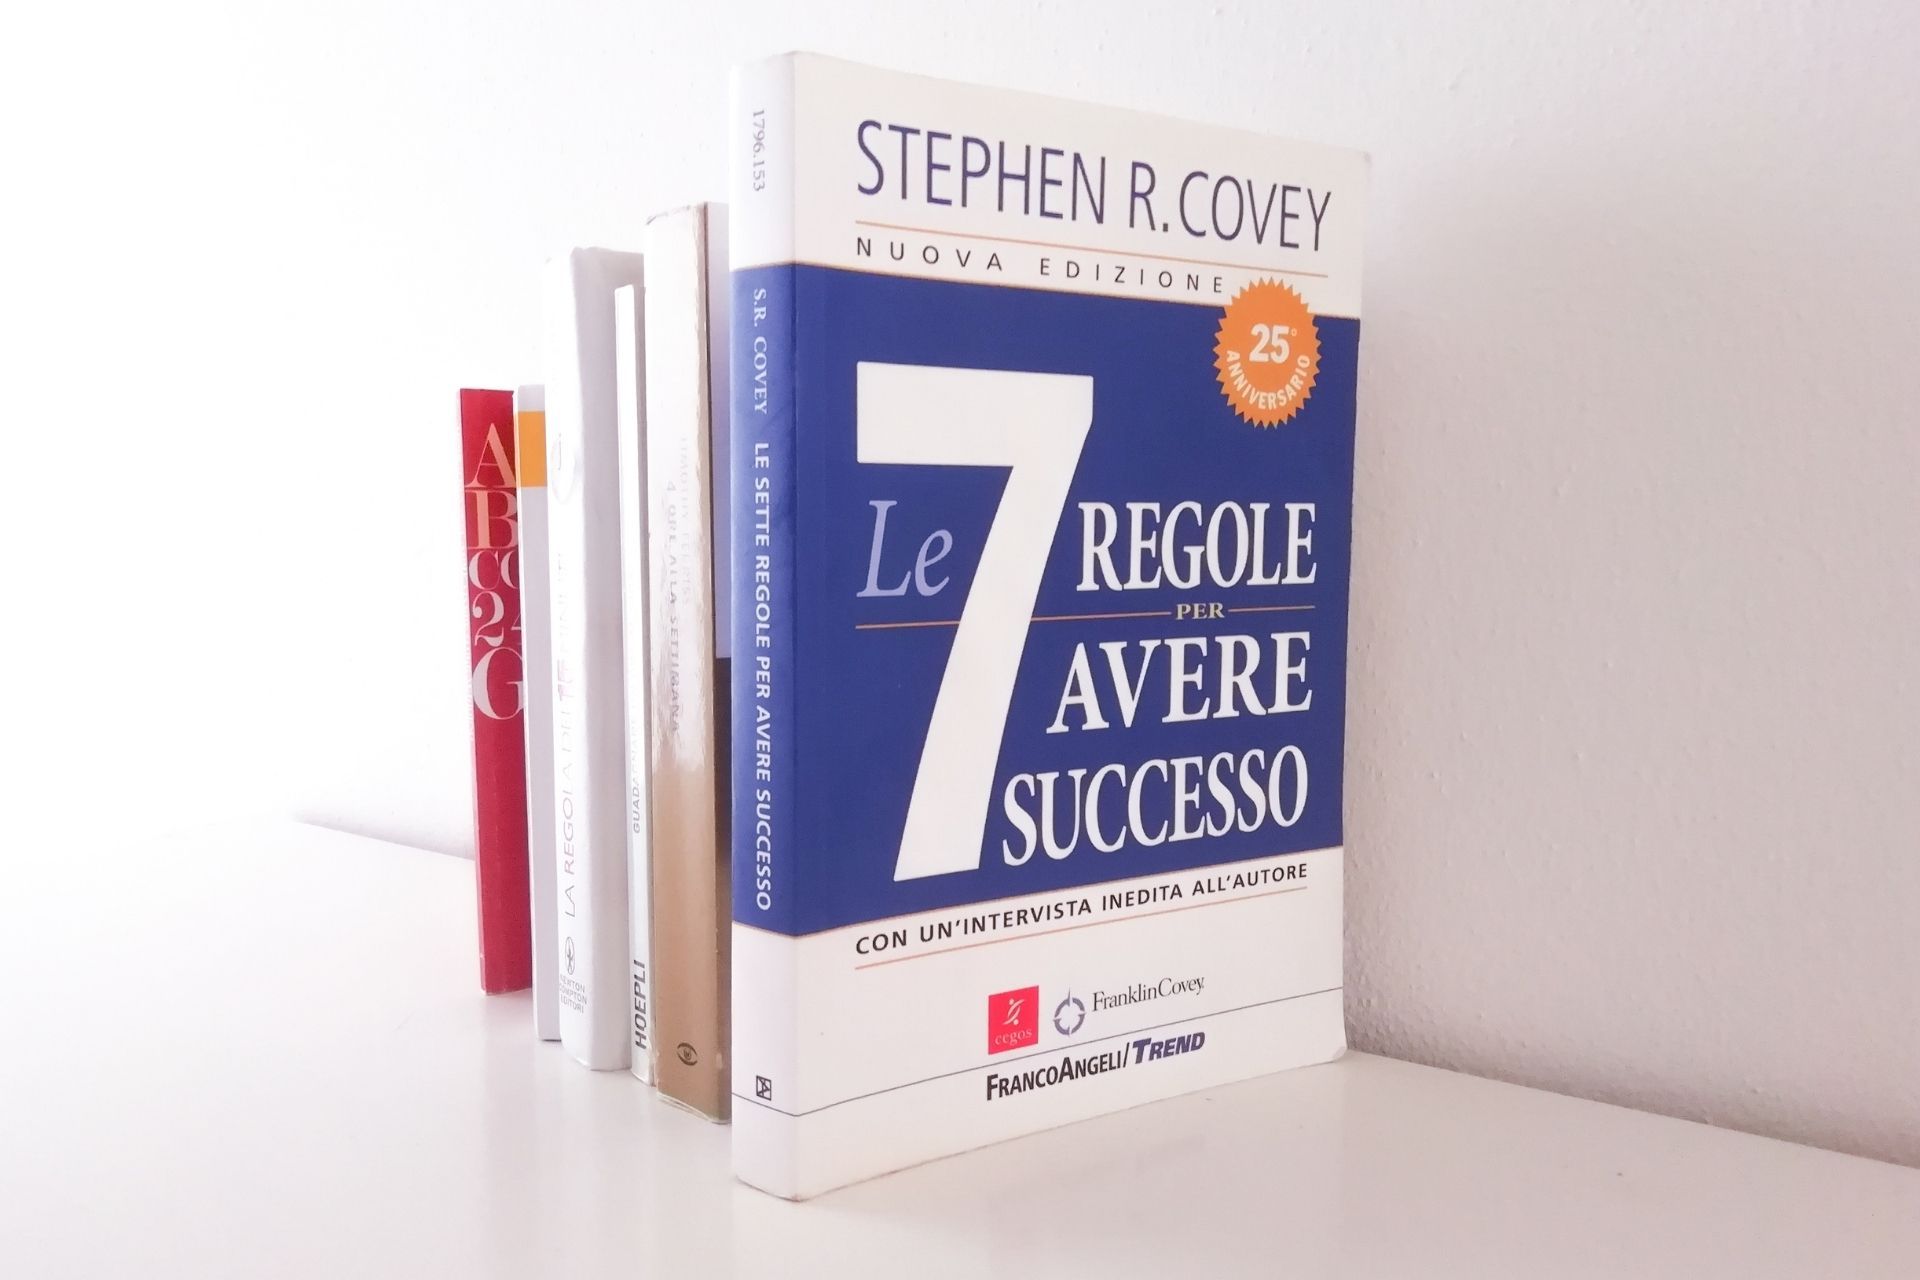 Le 7 regole per avere successo di Stephen Covey - Paroladordine